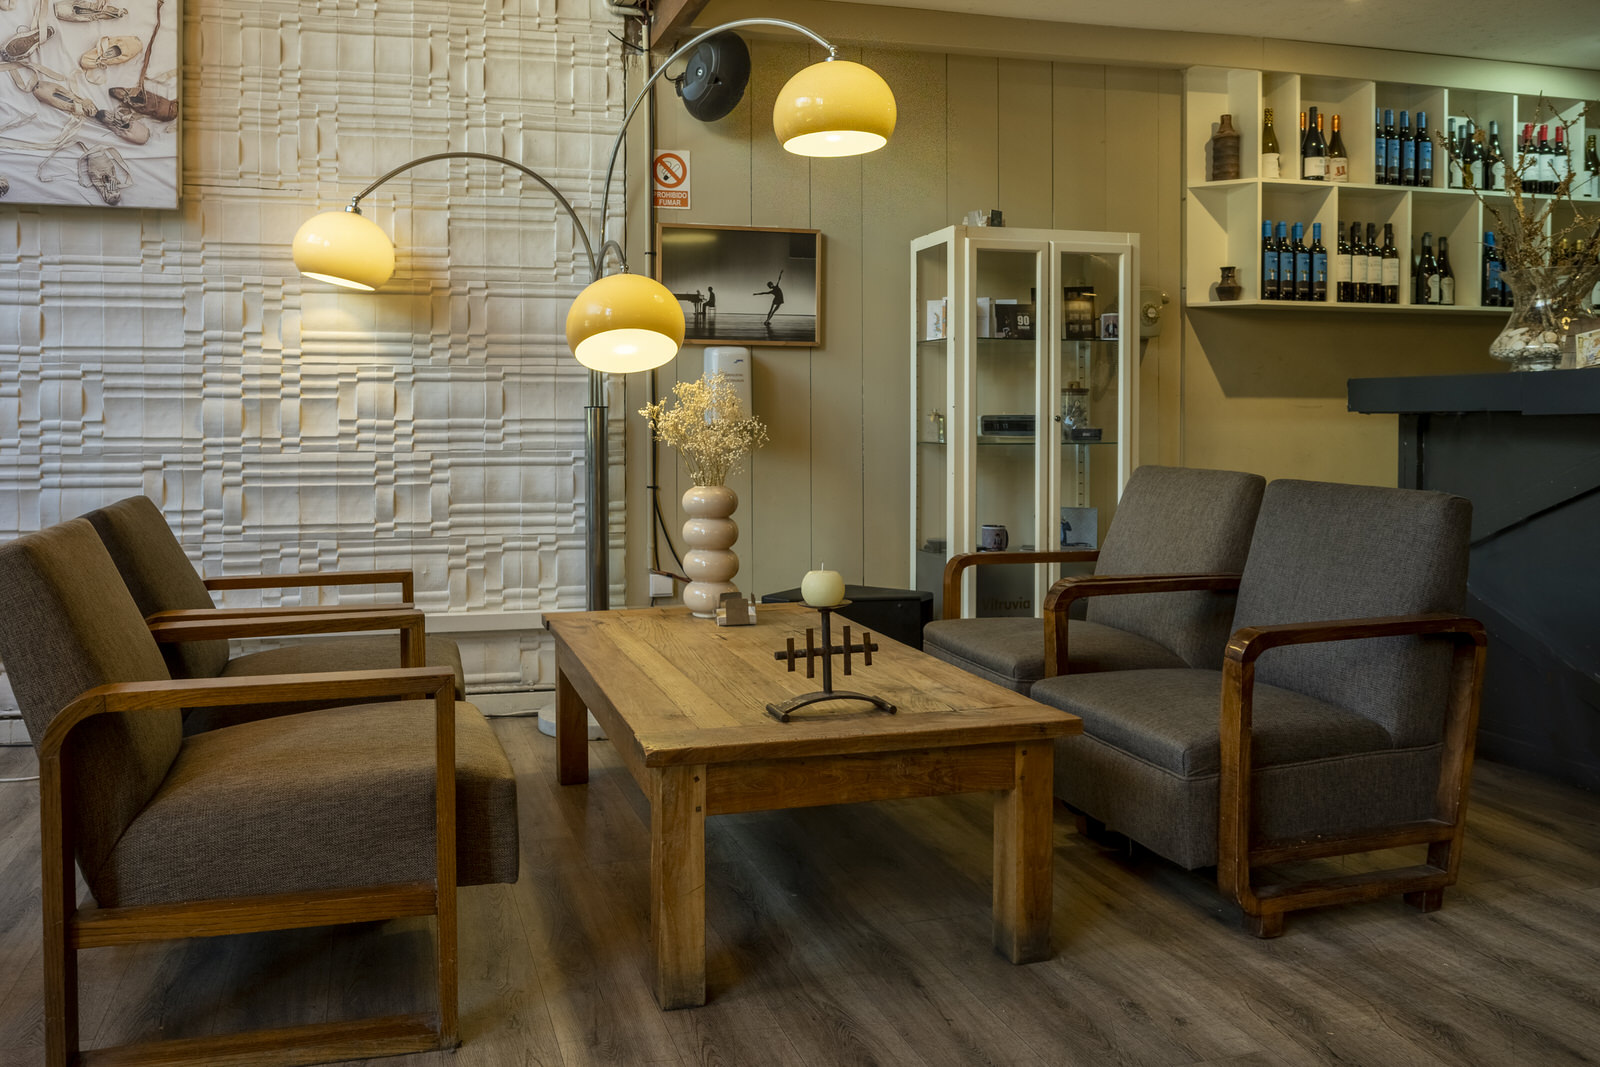 Imagen del interior de la cafetería, con unos sillones y una lámpara de pie